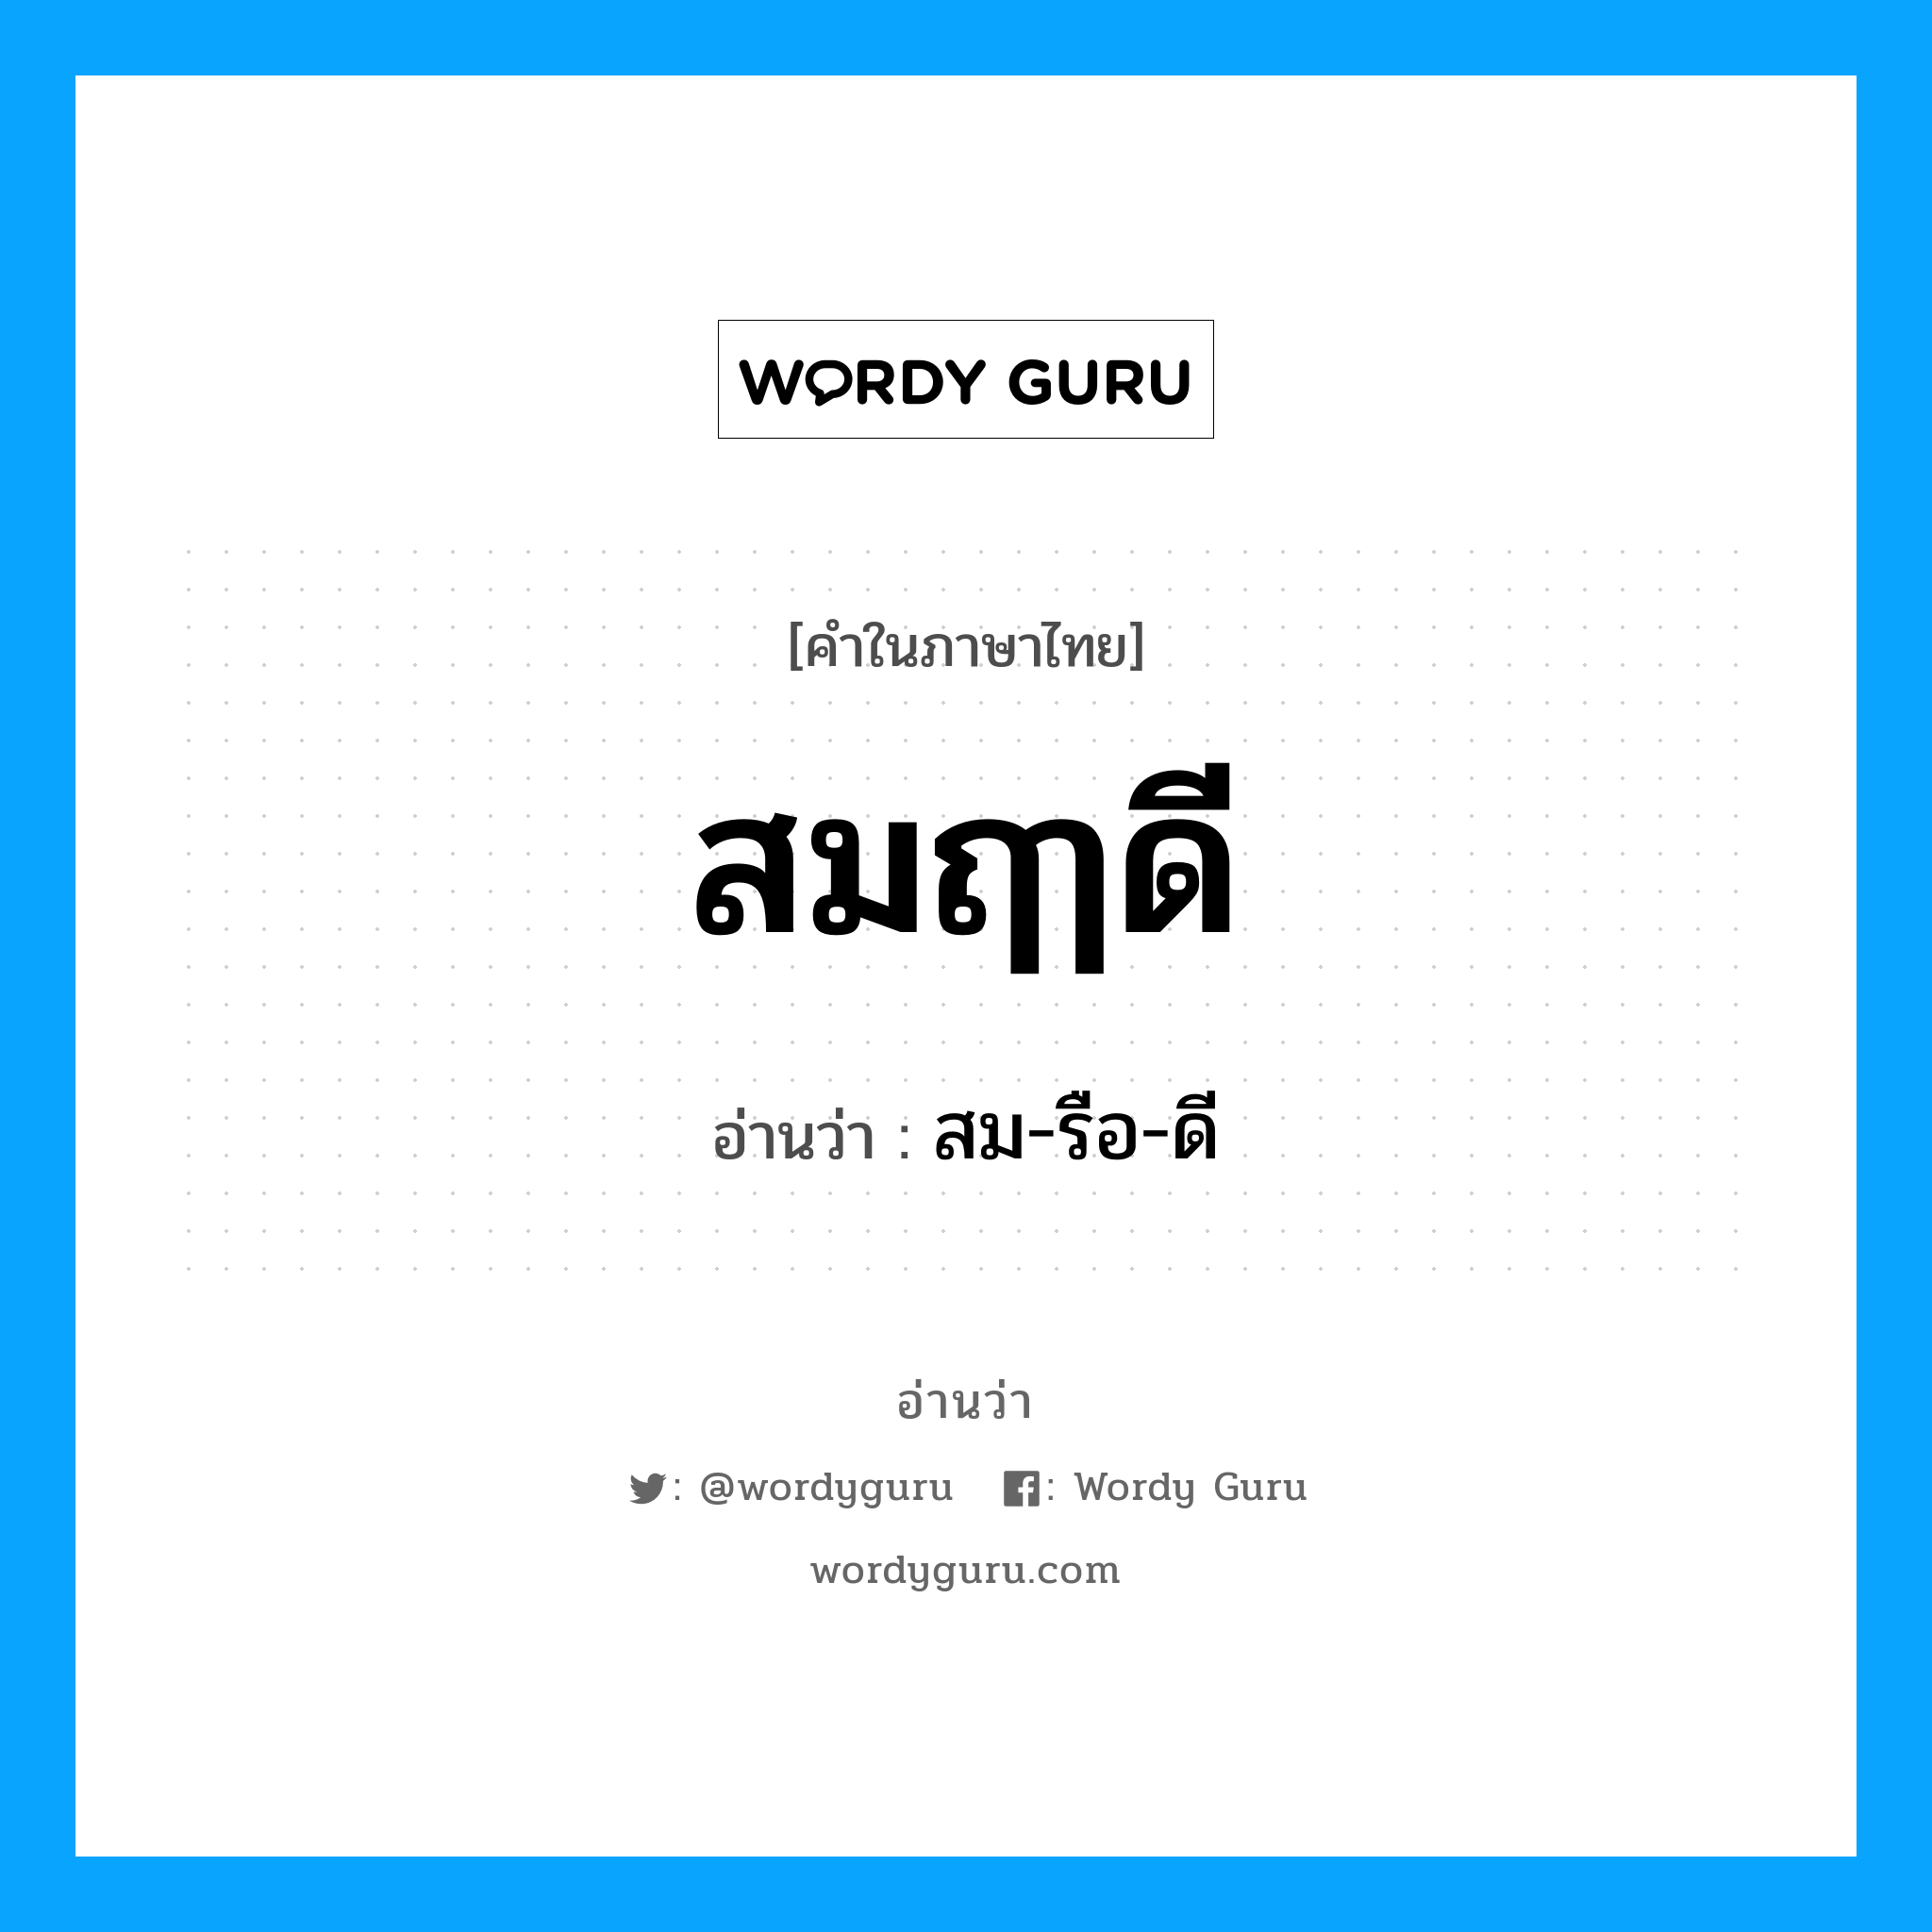 สมฤๅดี อ่านว่า?, คำในภาษาไทย สมฤๅดี อ่านว่า สม-รือ-ดี